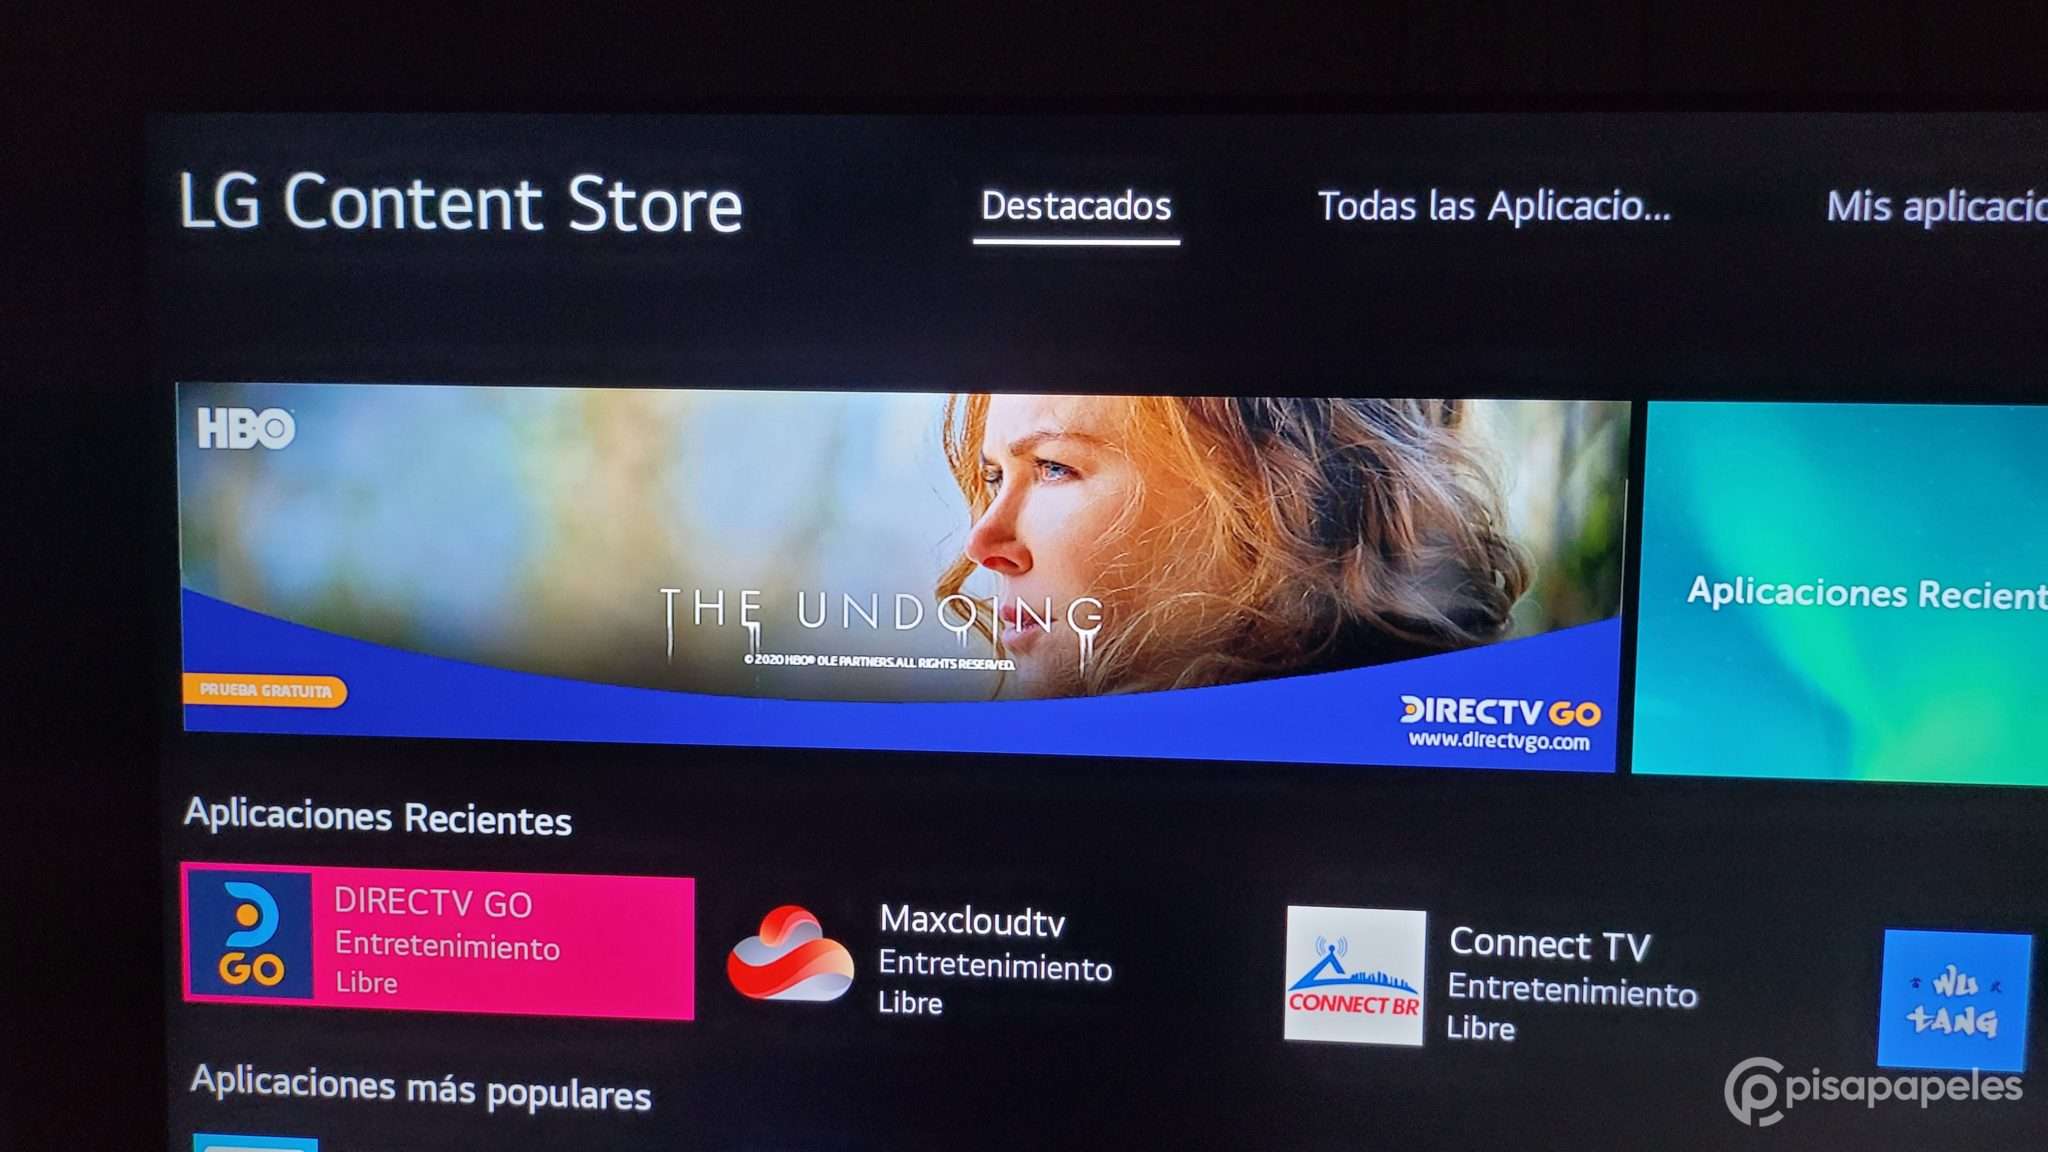 La aplicación DirecTV GO ya está disponible en los Smart TV de LG